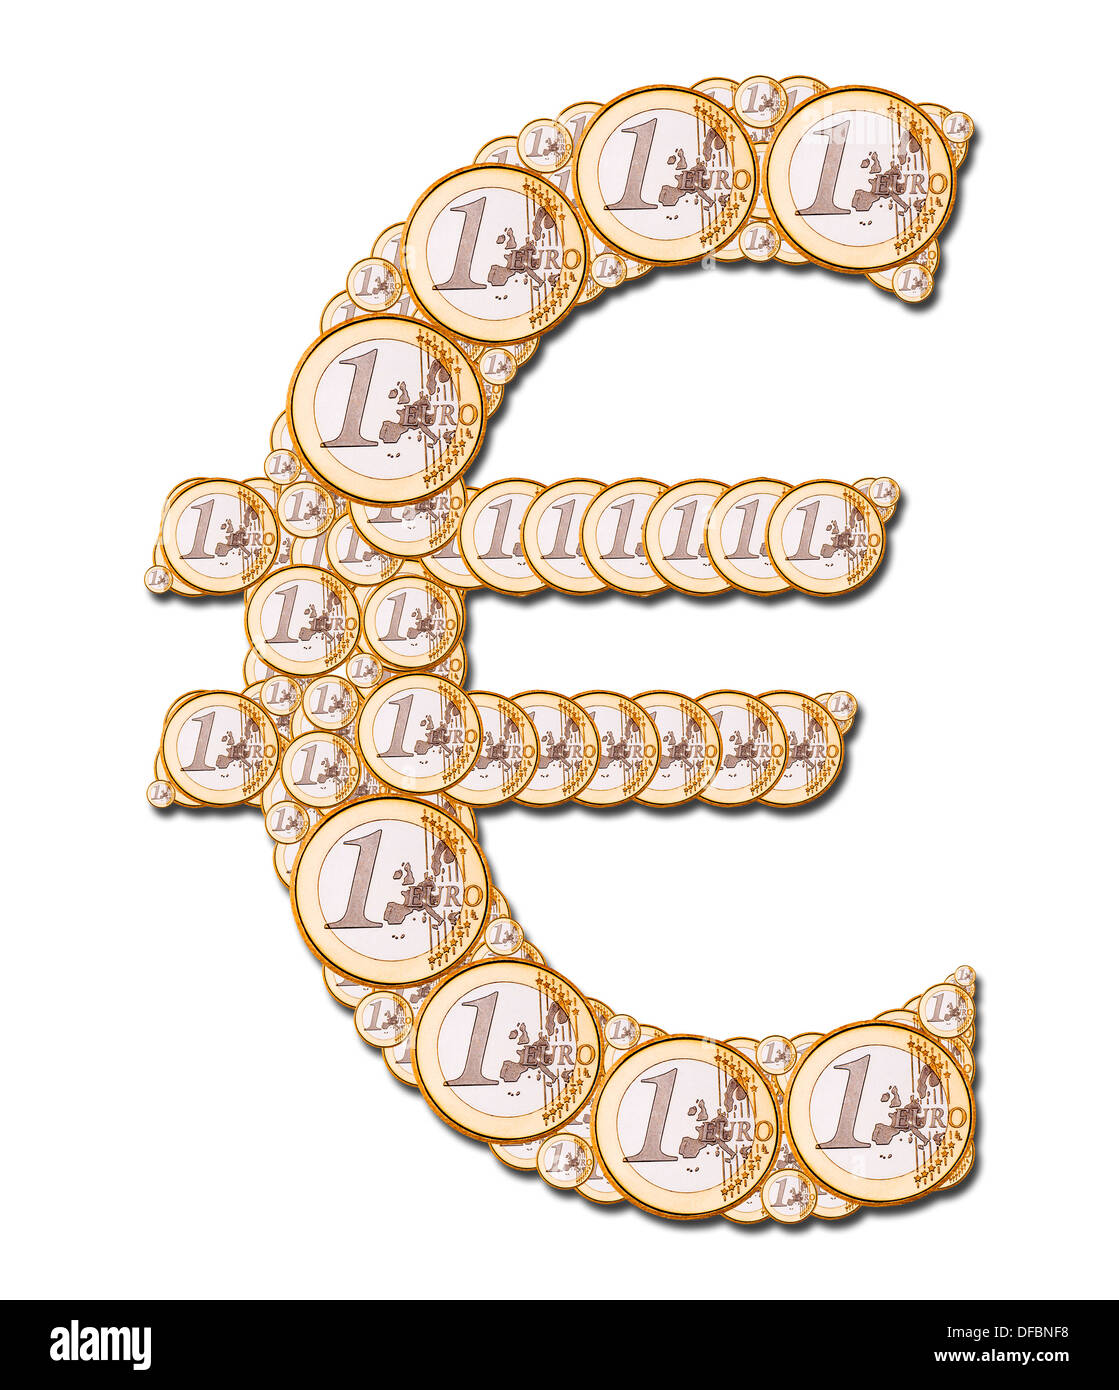 https://c8.alamy.com/comp/DFBNF8/euro-sign-made-from-1-euro-coins-DFBNF8.jpg